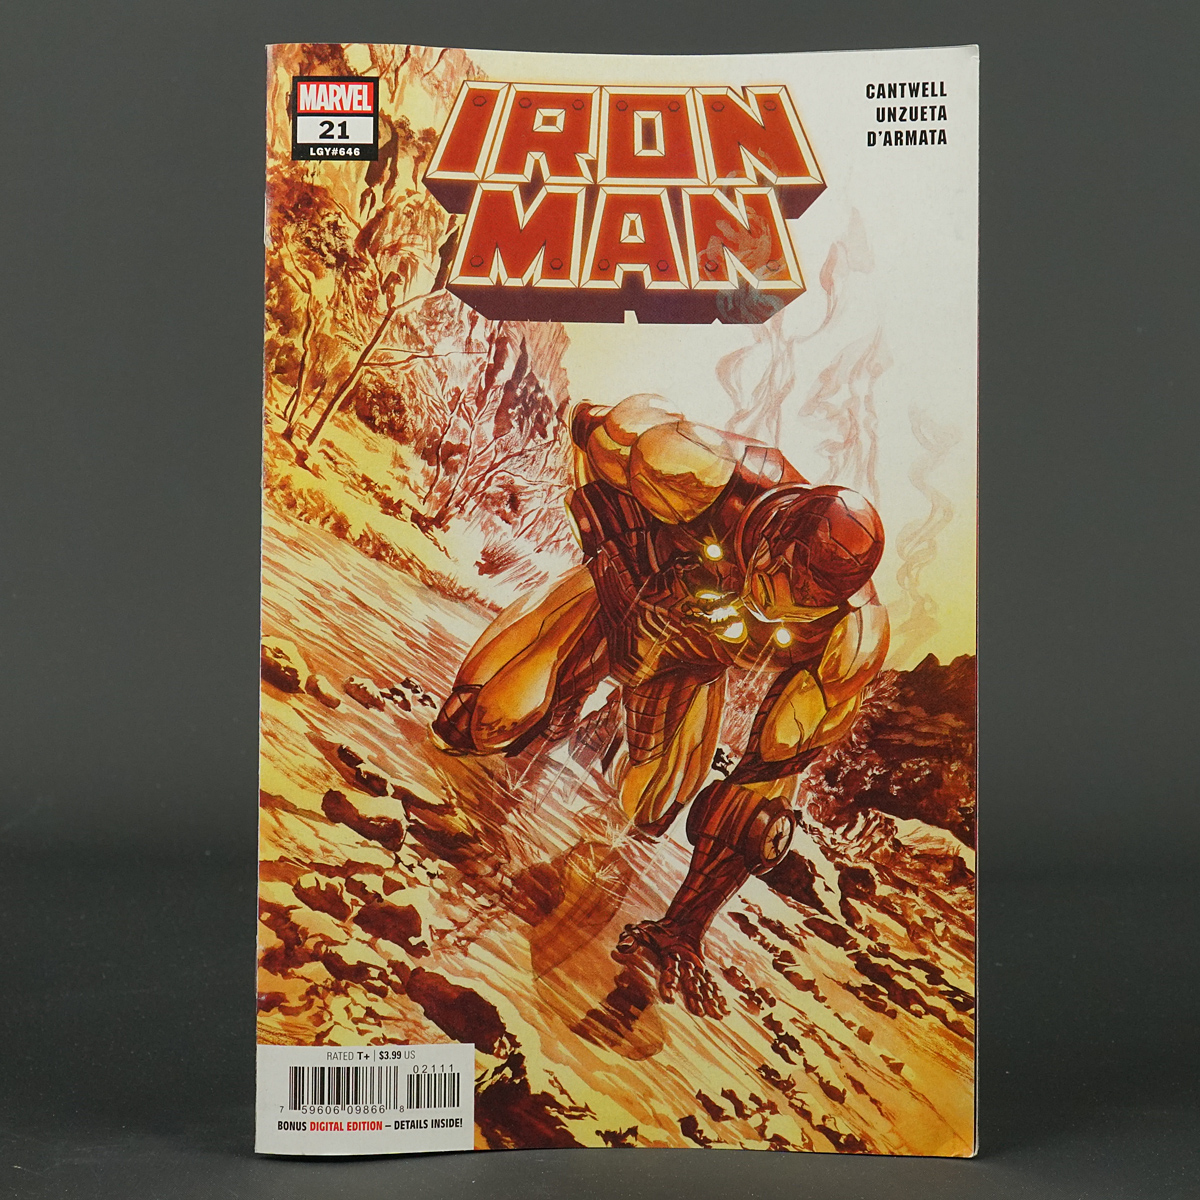 IRON MAN #21 Marvel Comics 2022 APR220992 (W) Cantwell (A) Unzueta (CA) Ross